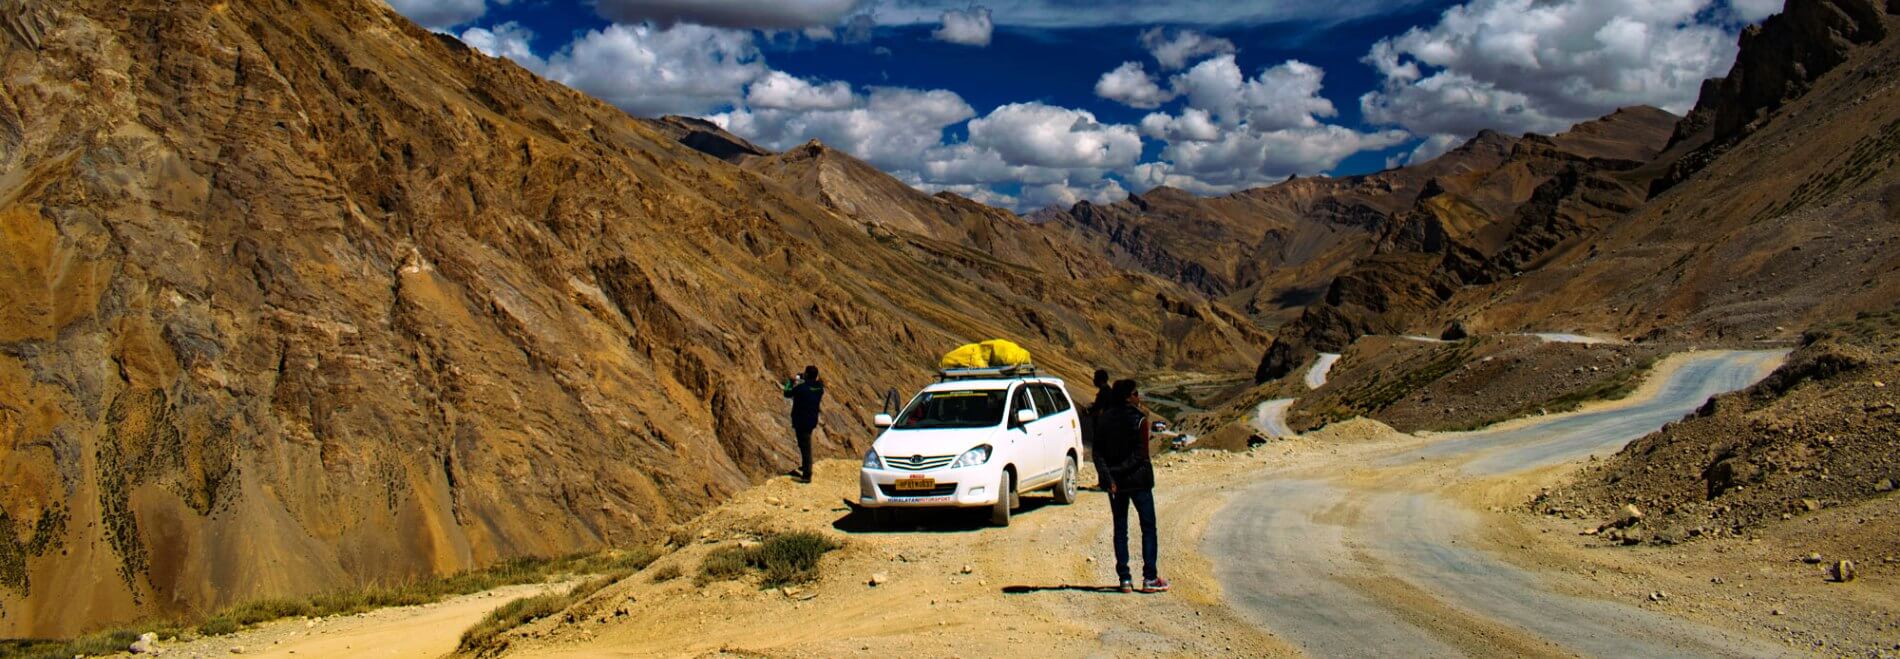 leh ladakh trip southern travels